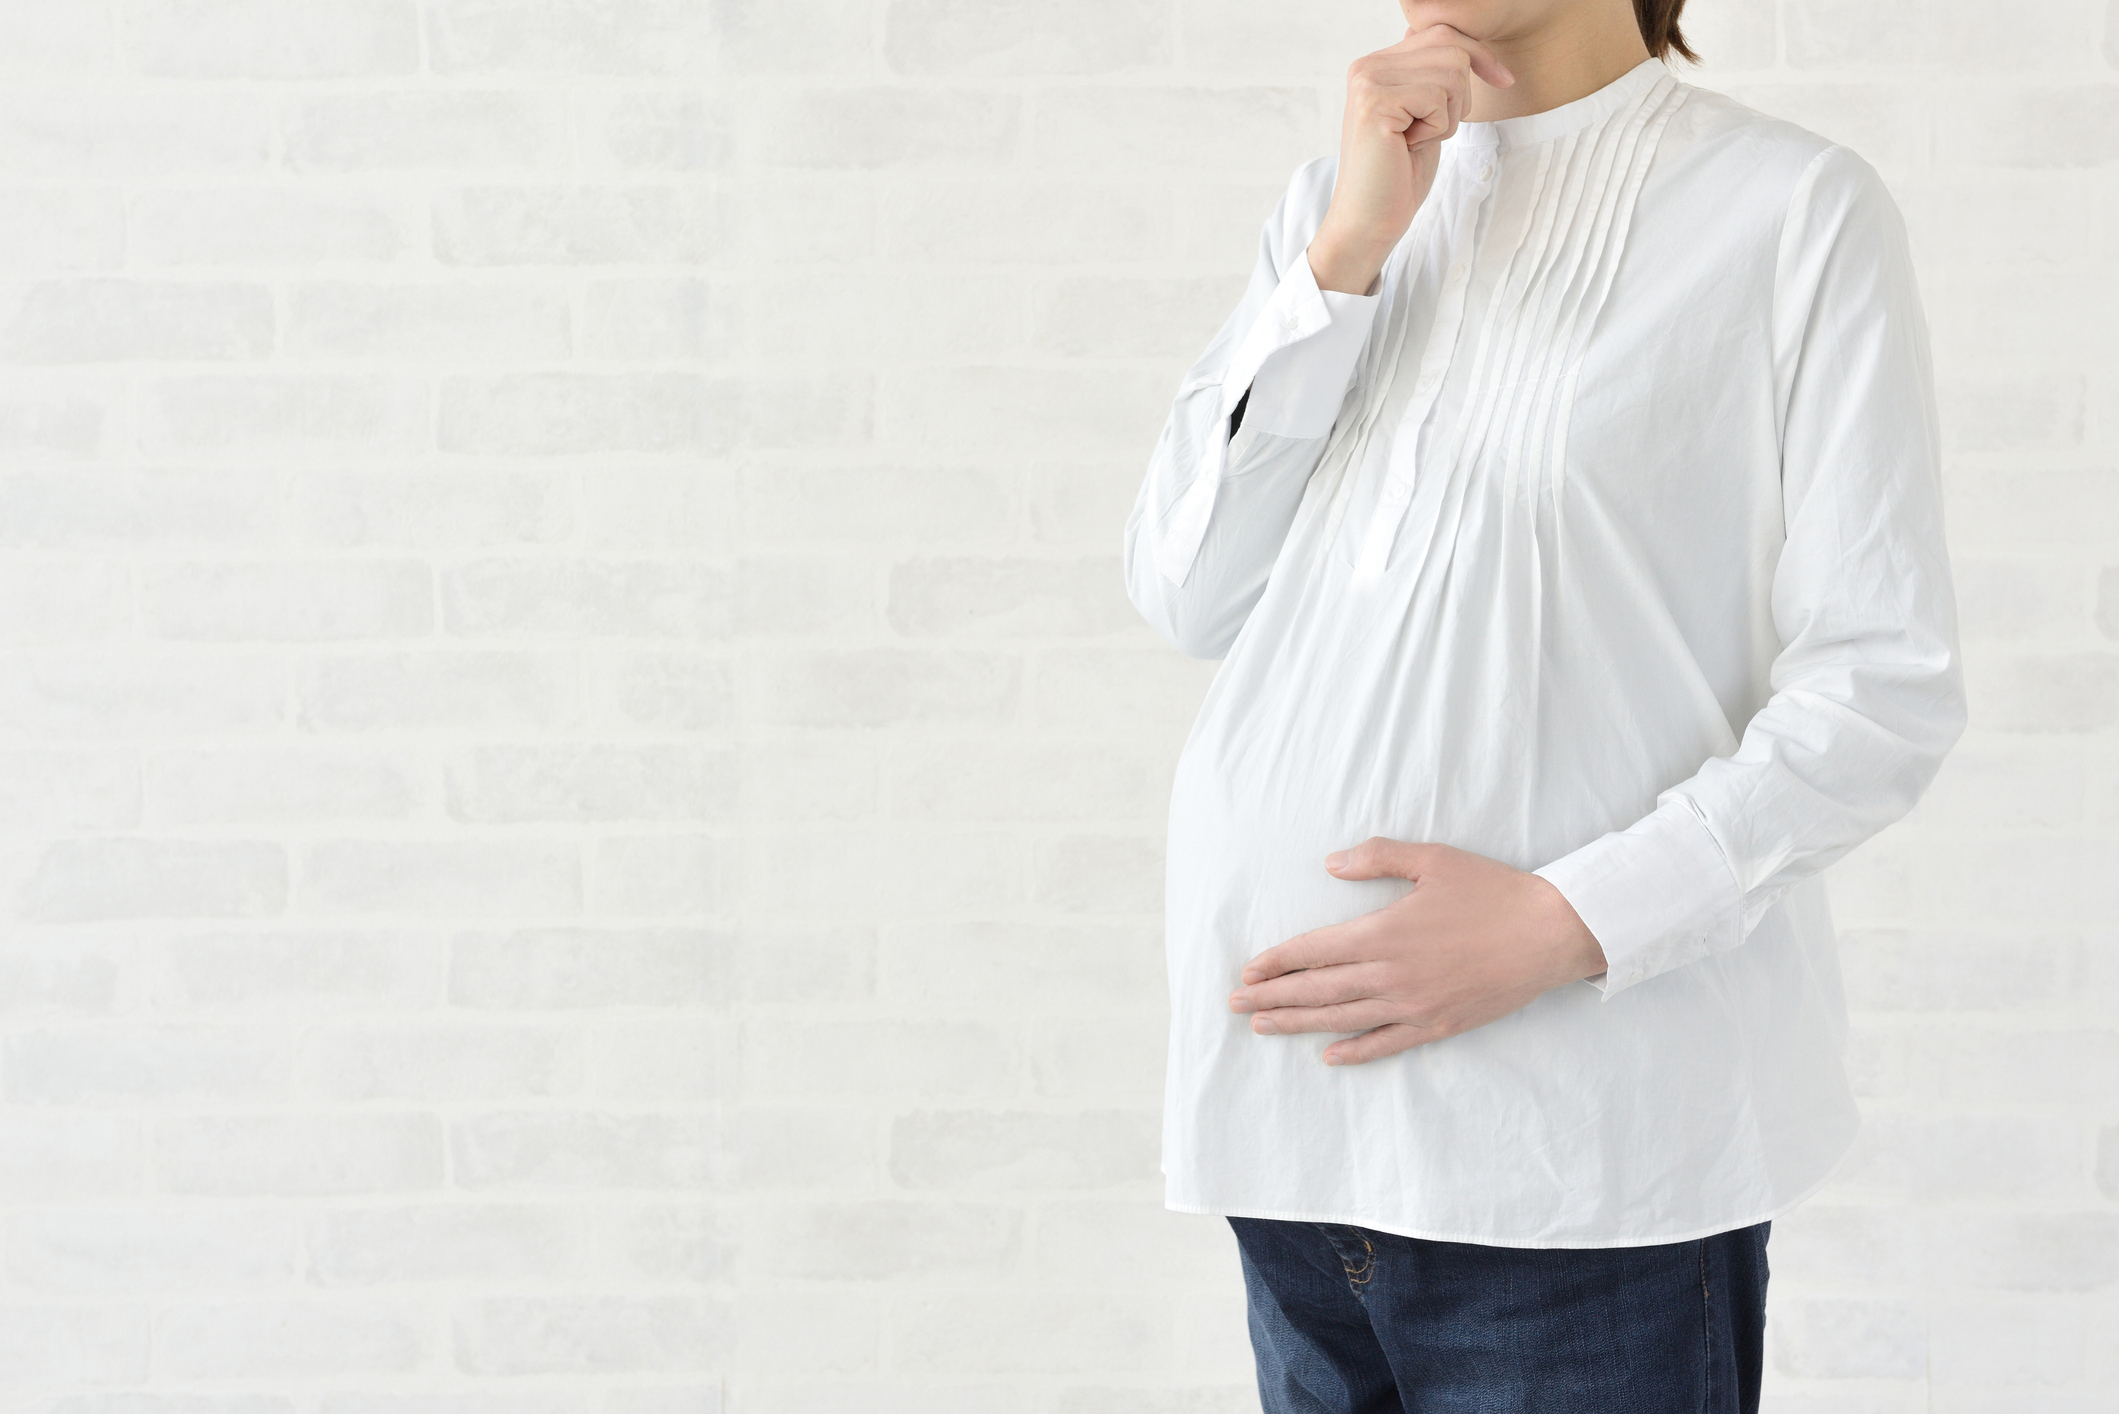 排卵障害とは　原因や検査・治療方法をわかりやすく解説